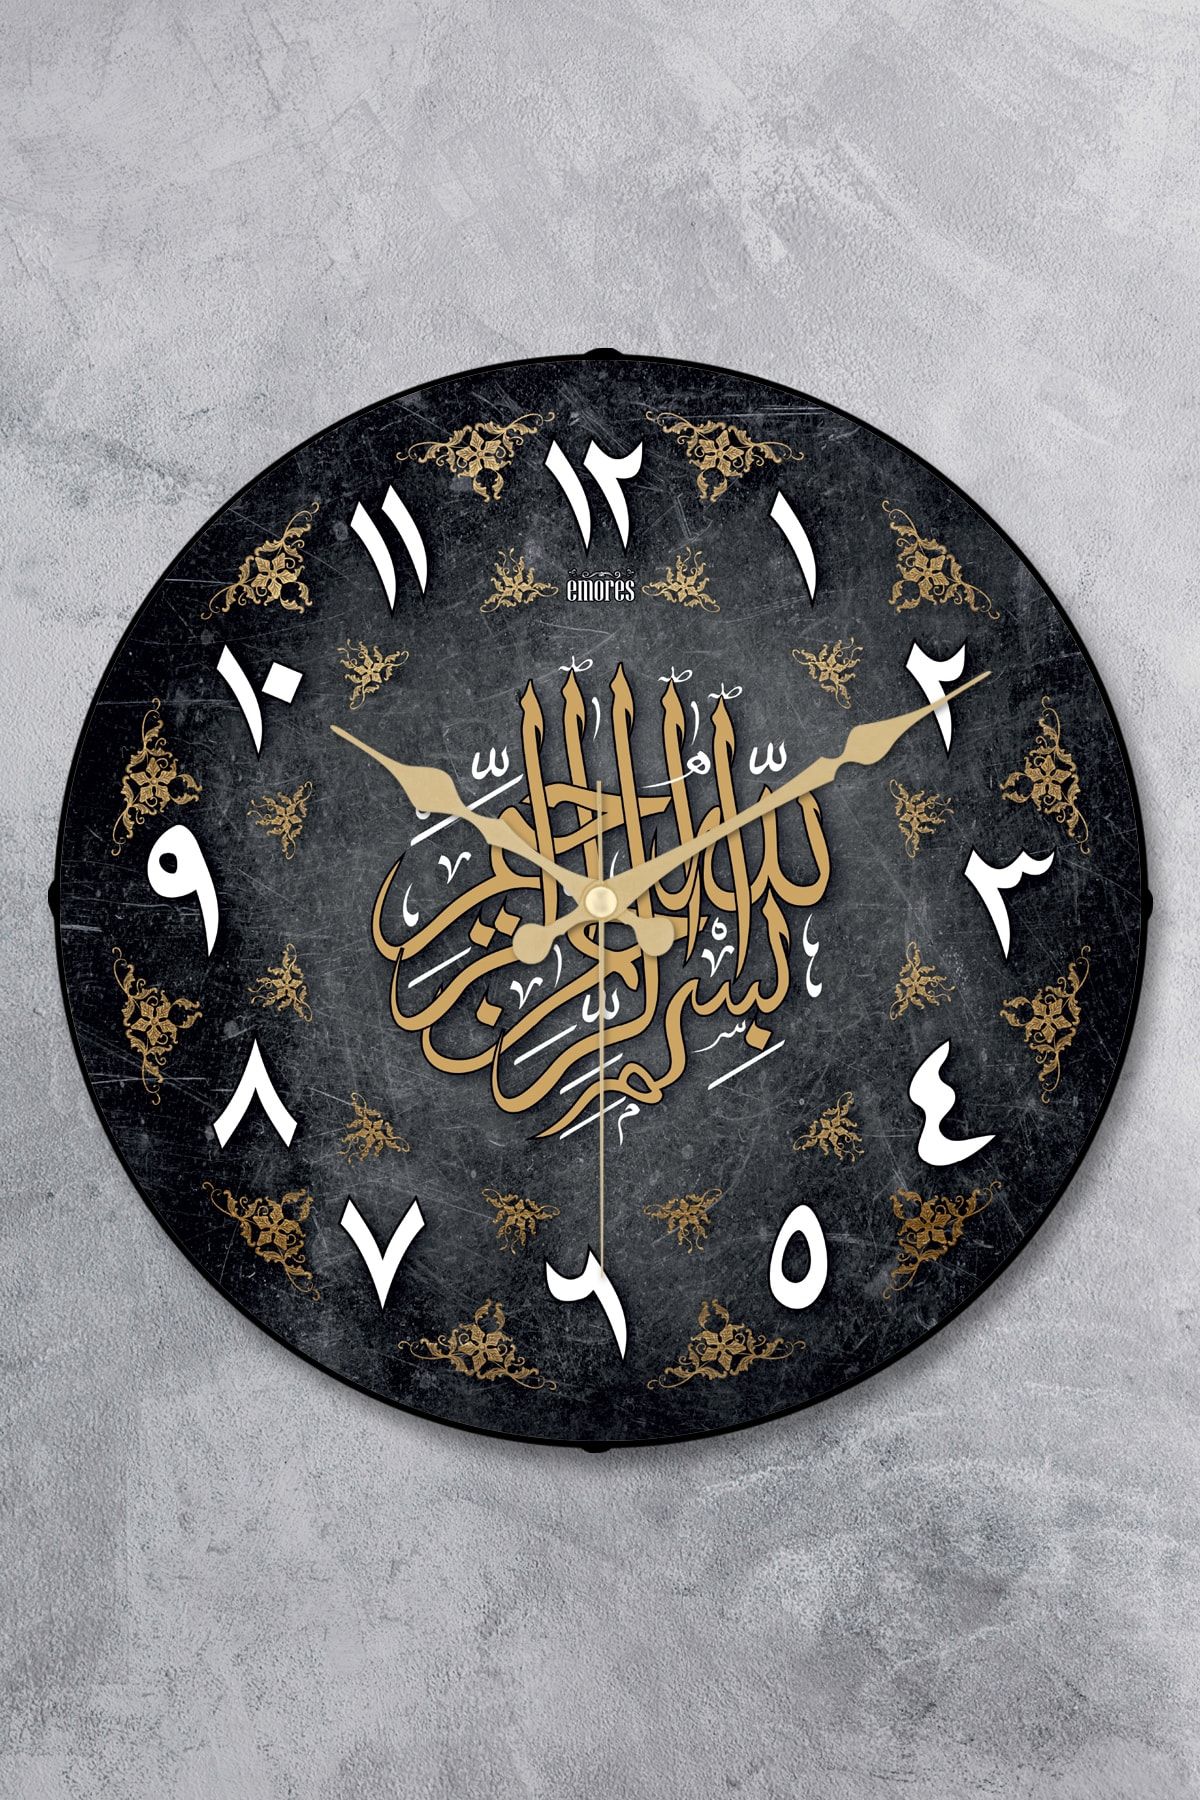 EMORES 36 Cm Gerçek Bombe Cam Akar Saniye Sessiz Mekanizma Dekoratif Ramazan Ramadan Ayetli Duvar Saati